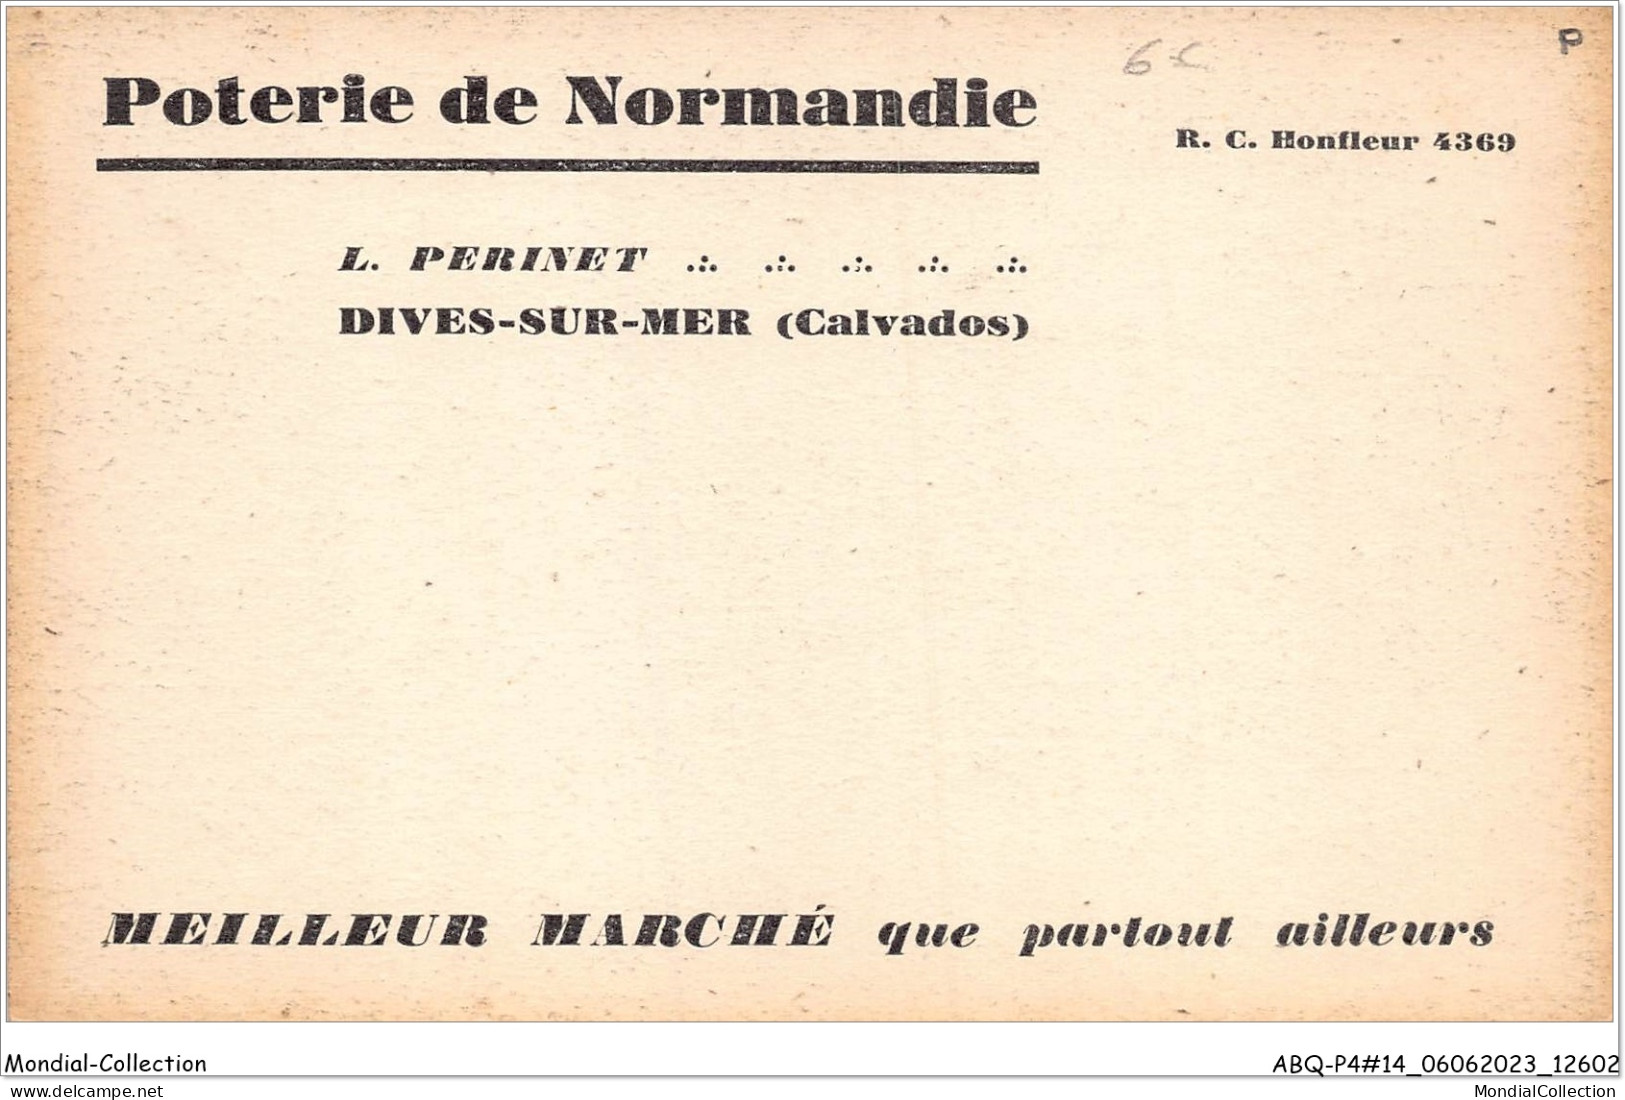 ABQP4-14-0303 - DIVES-SUR-MER - Perinet POTERIE DE NORMANDIE - Dives